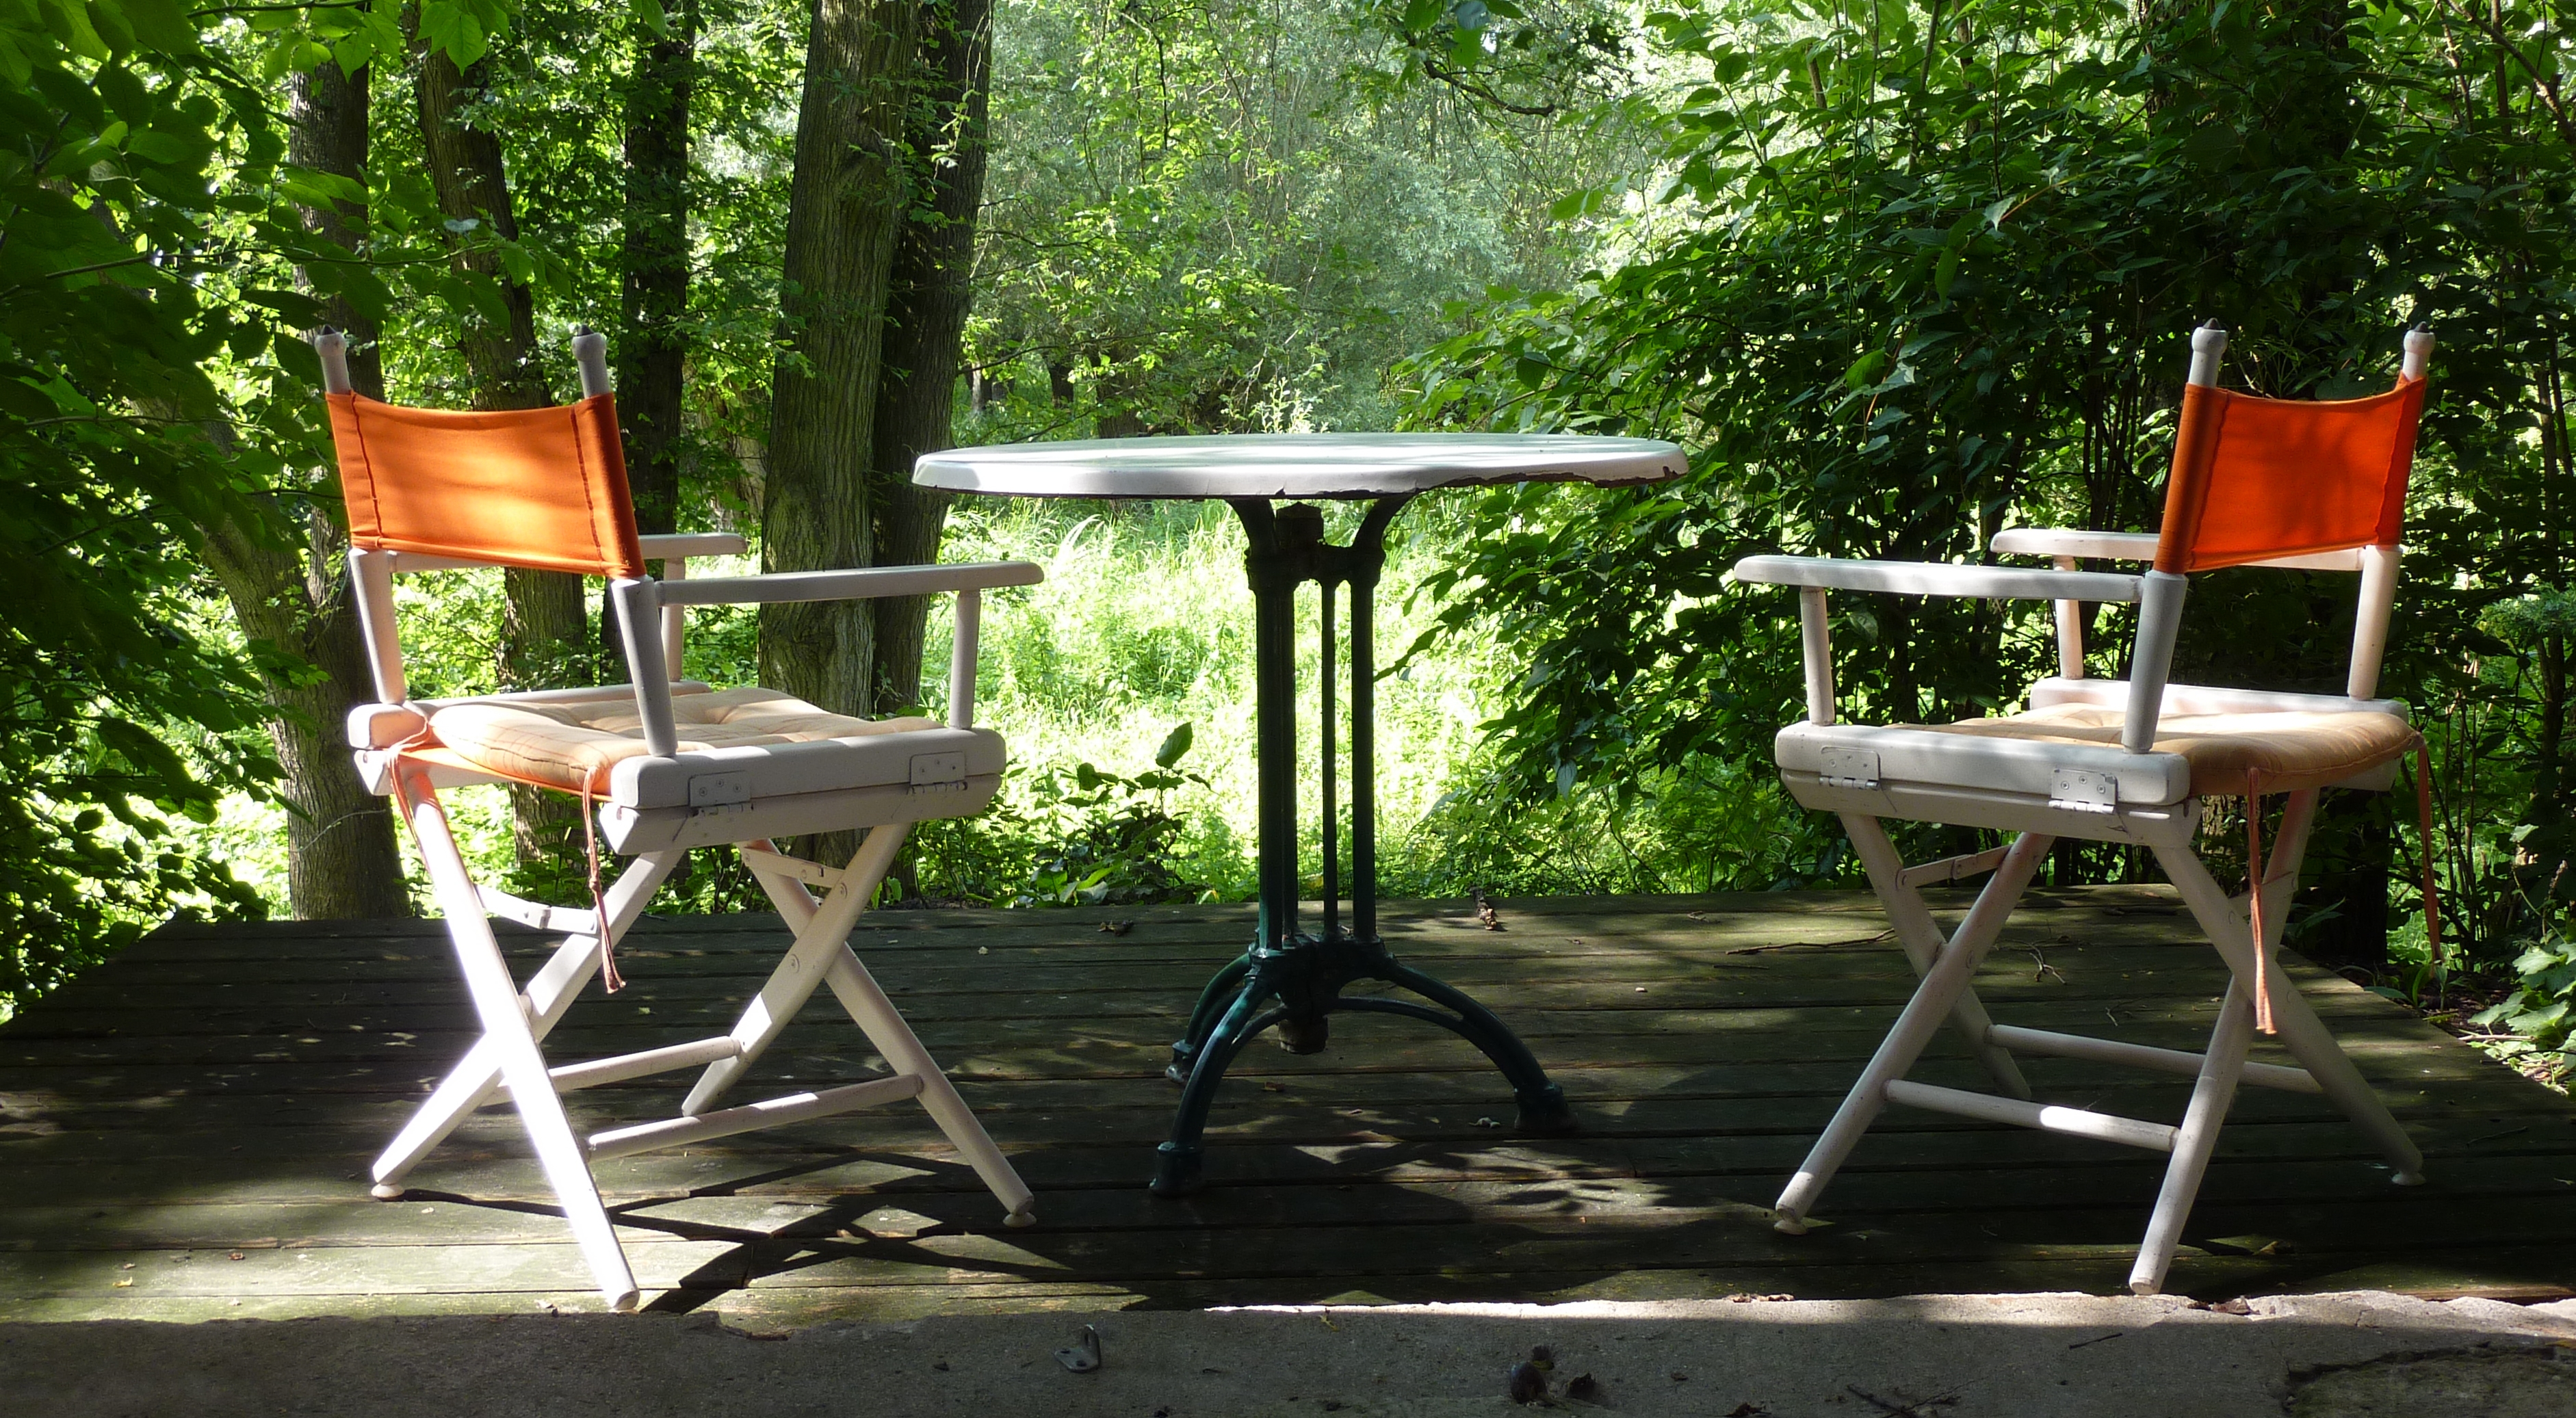 Suche nach dem Sinn: 2 Stühle und ein Tisch im Wald